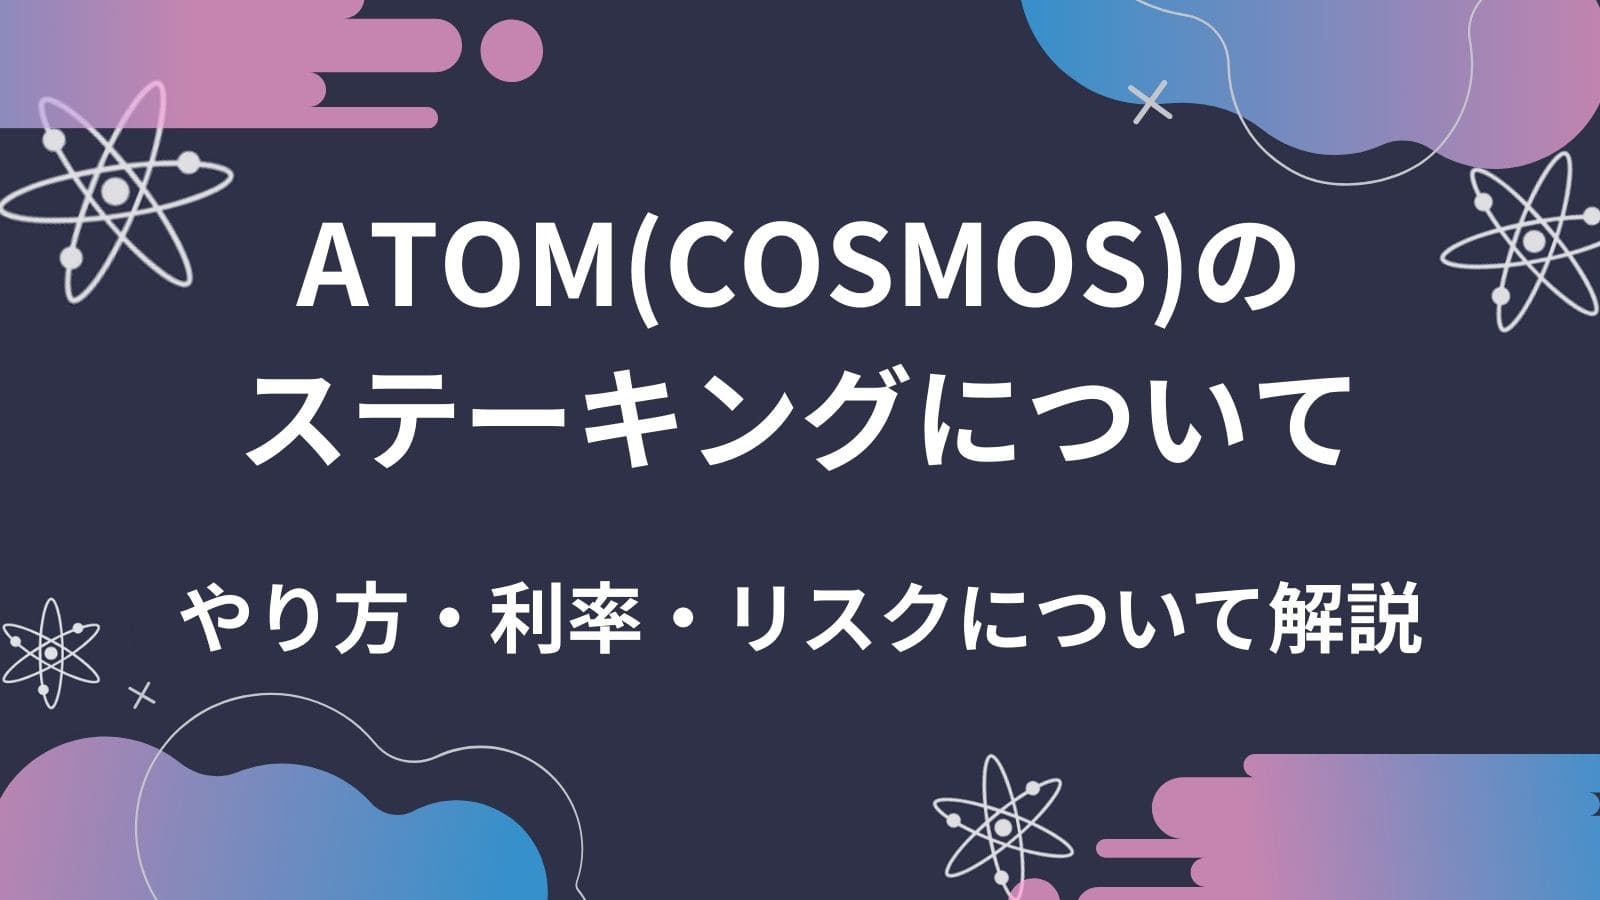 Atom コスモス